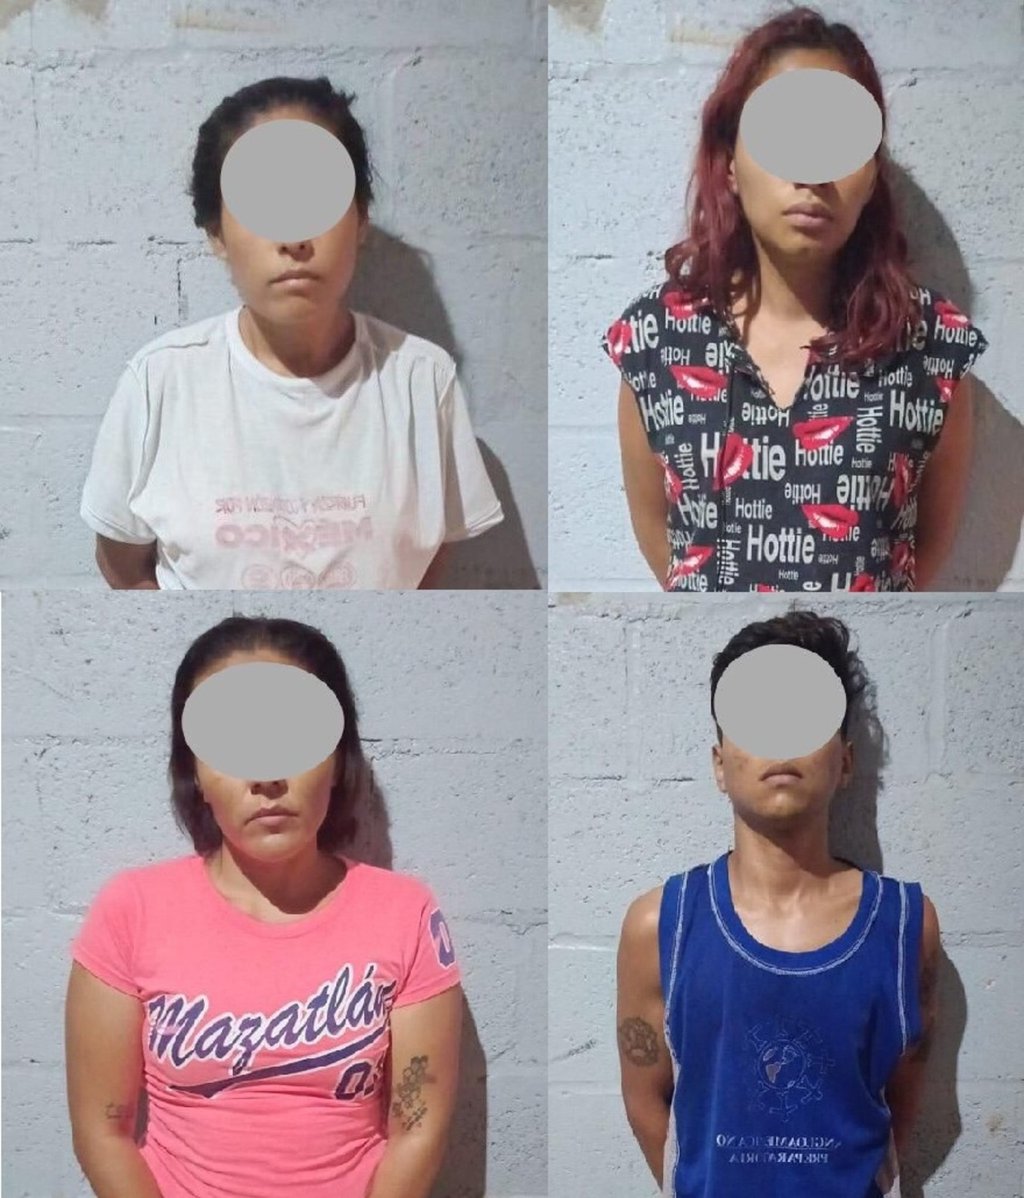 Estatales detuvieron a cuatro presuntos narcomenudistas con 'cristal', tres mujeres y un varón, en Gómez Palacio.